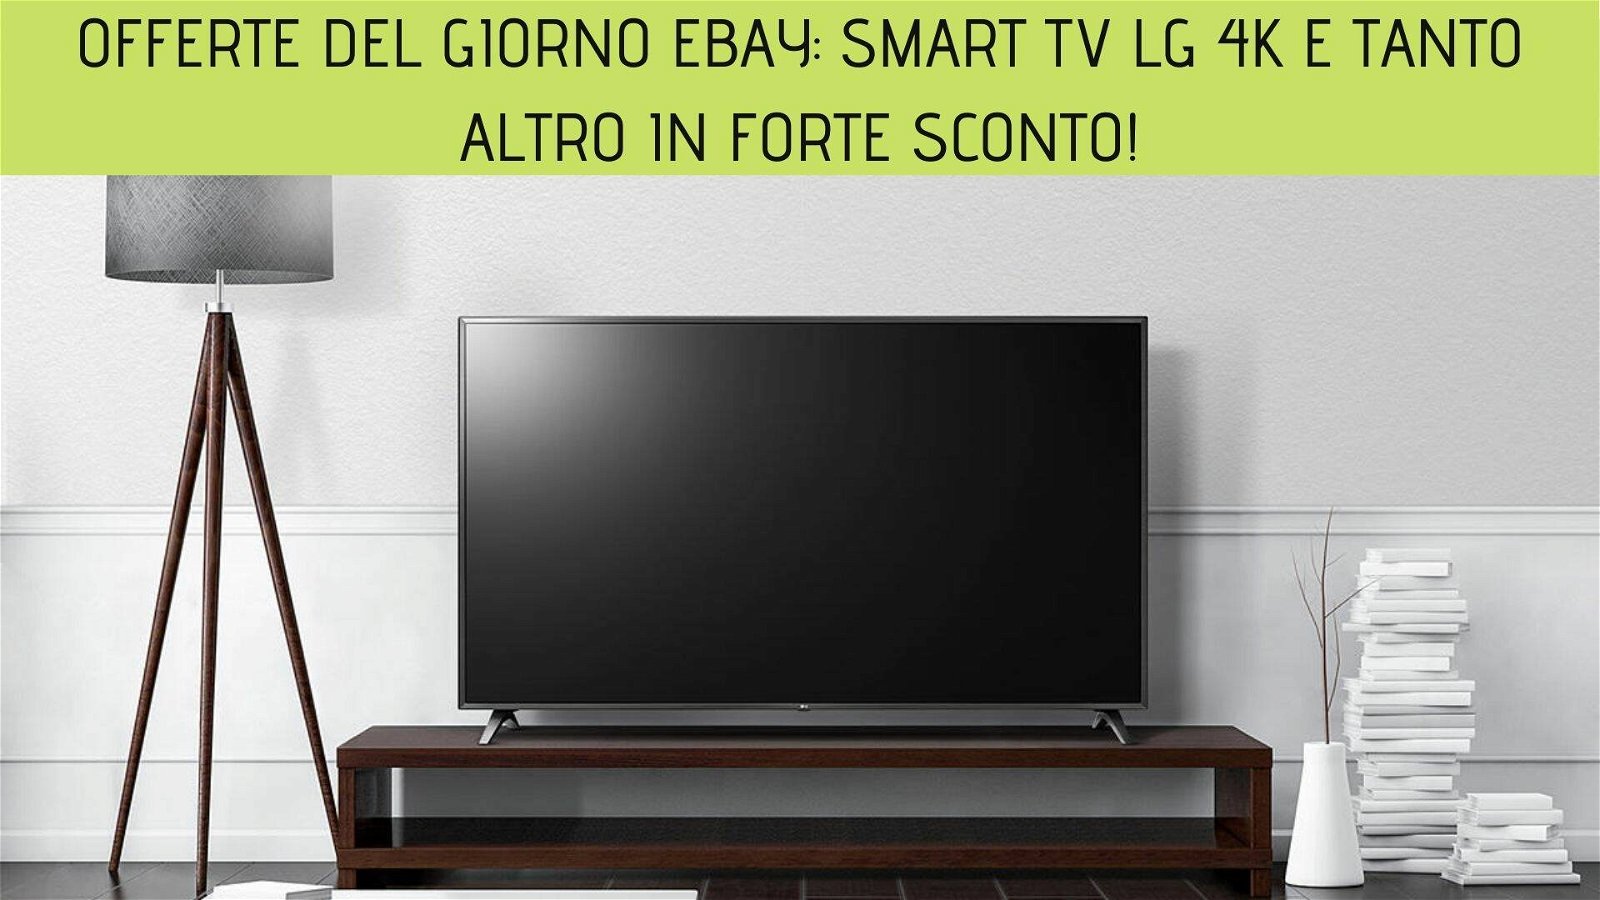 Immagine di Offerte del giorno eBay: Smart TV LG 4K e tanto altro in forte sconto!